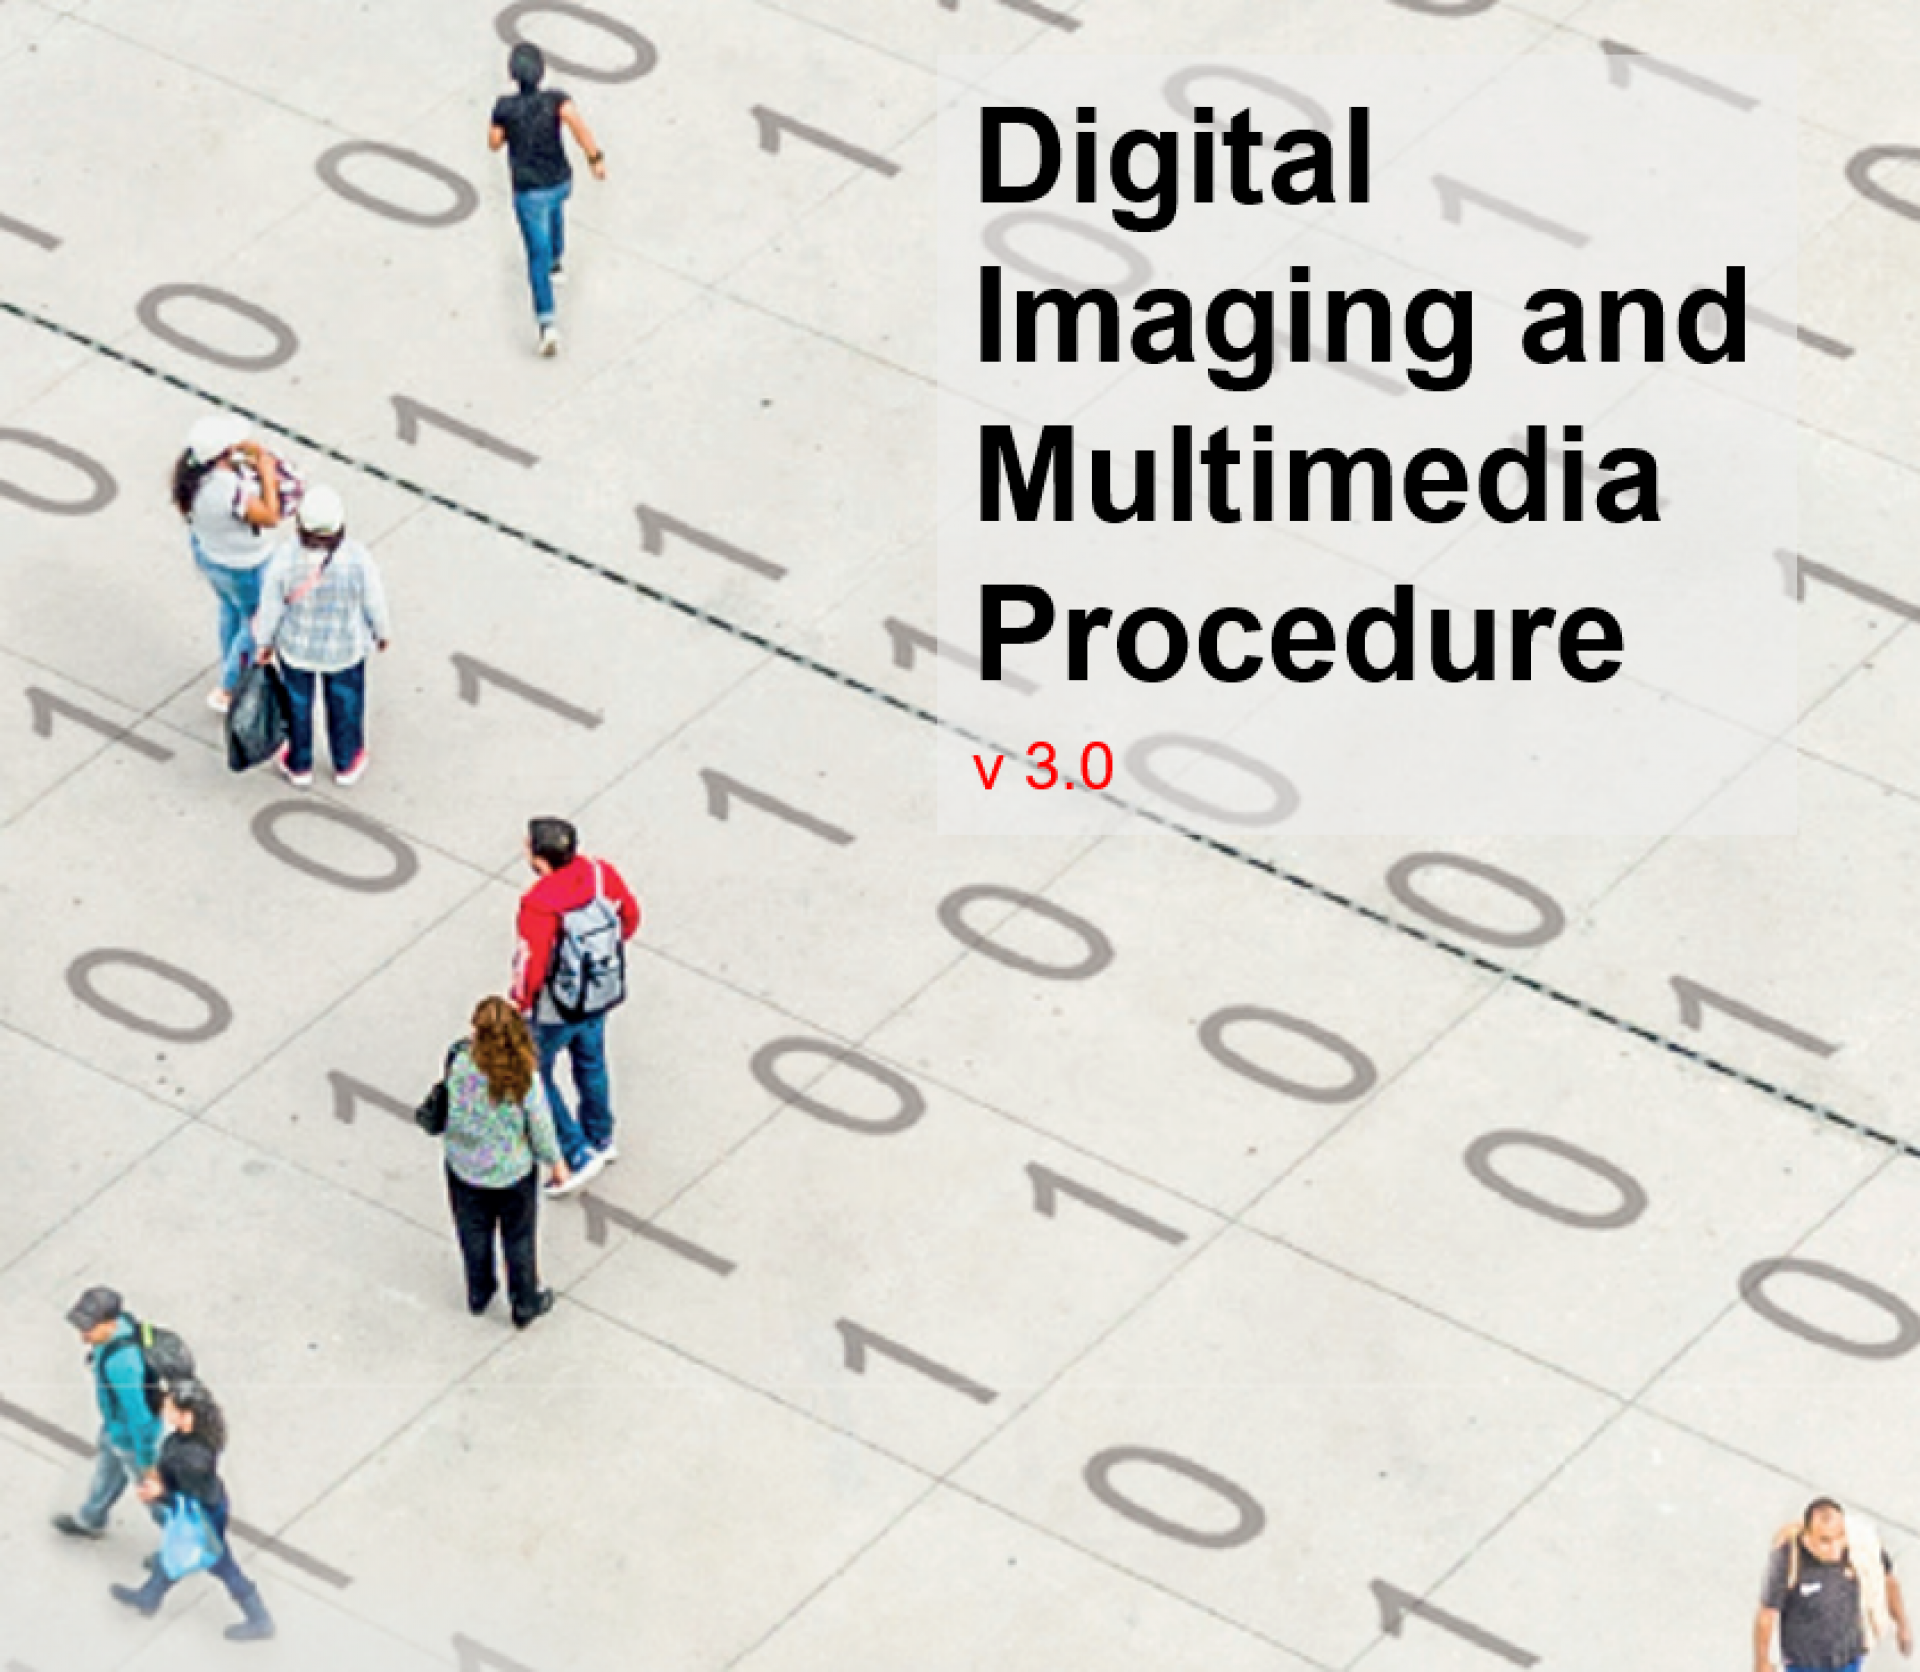 Digital Imaging and Multimedia Procedure